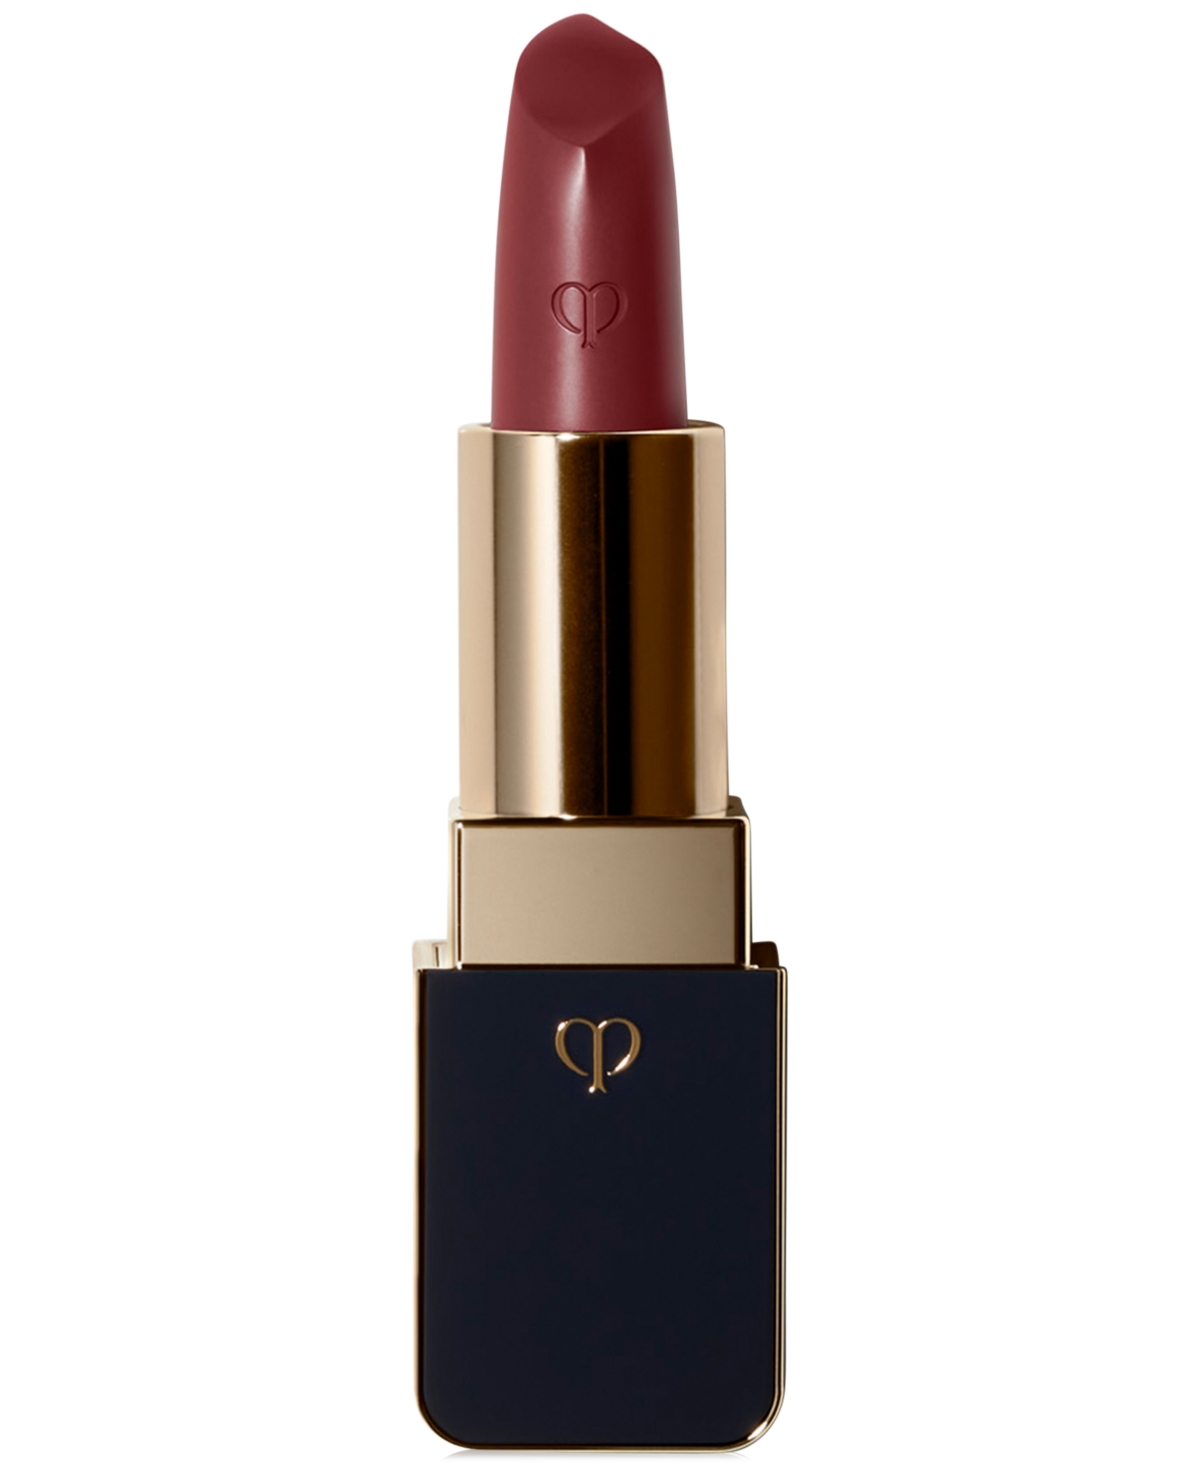 Clé De Peau Beauté Cle De Peau Beaute Lipstick In - Riveting Red